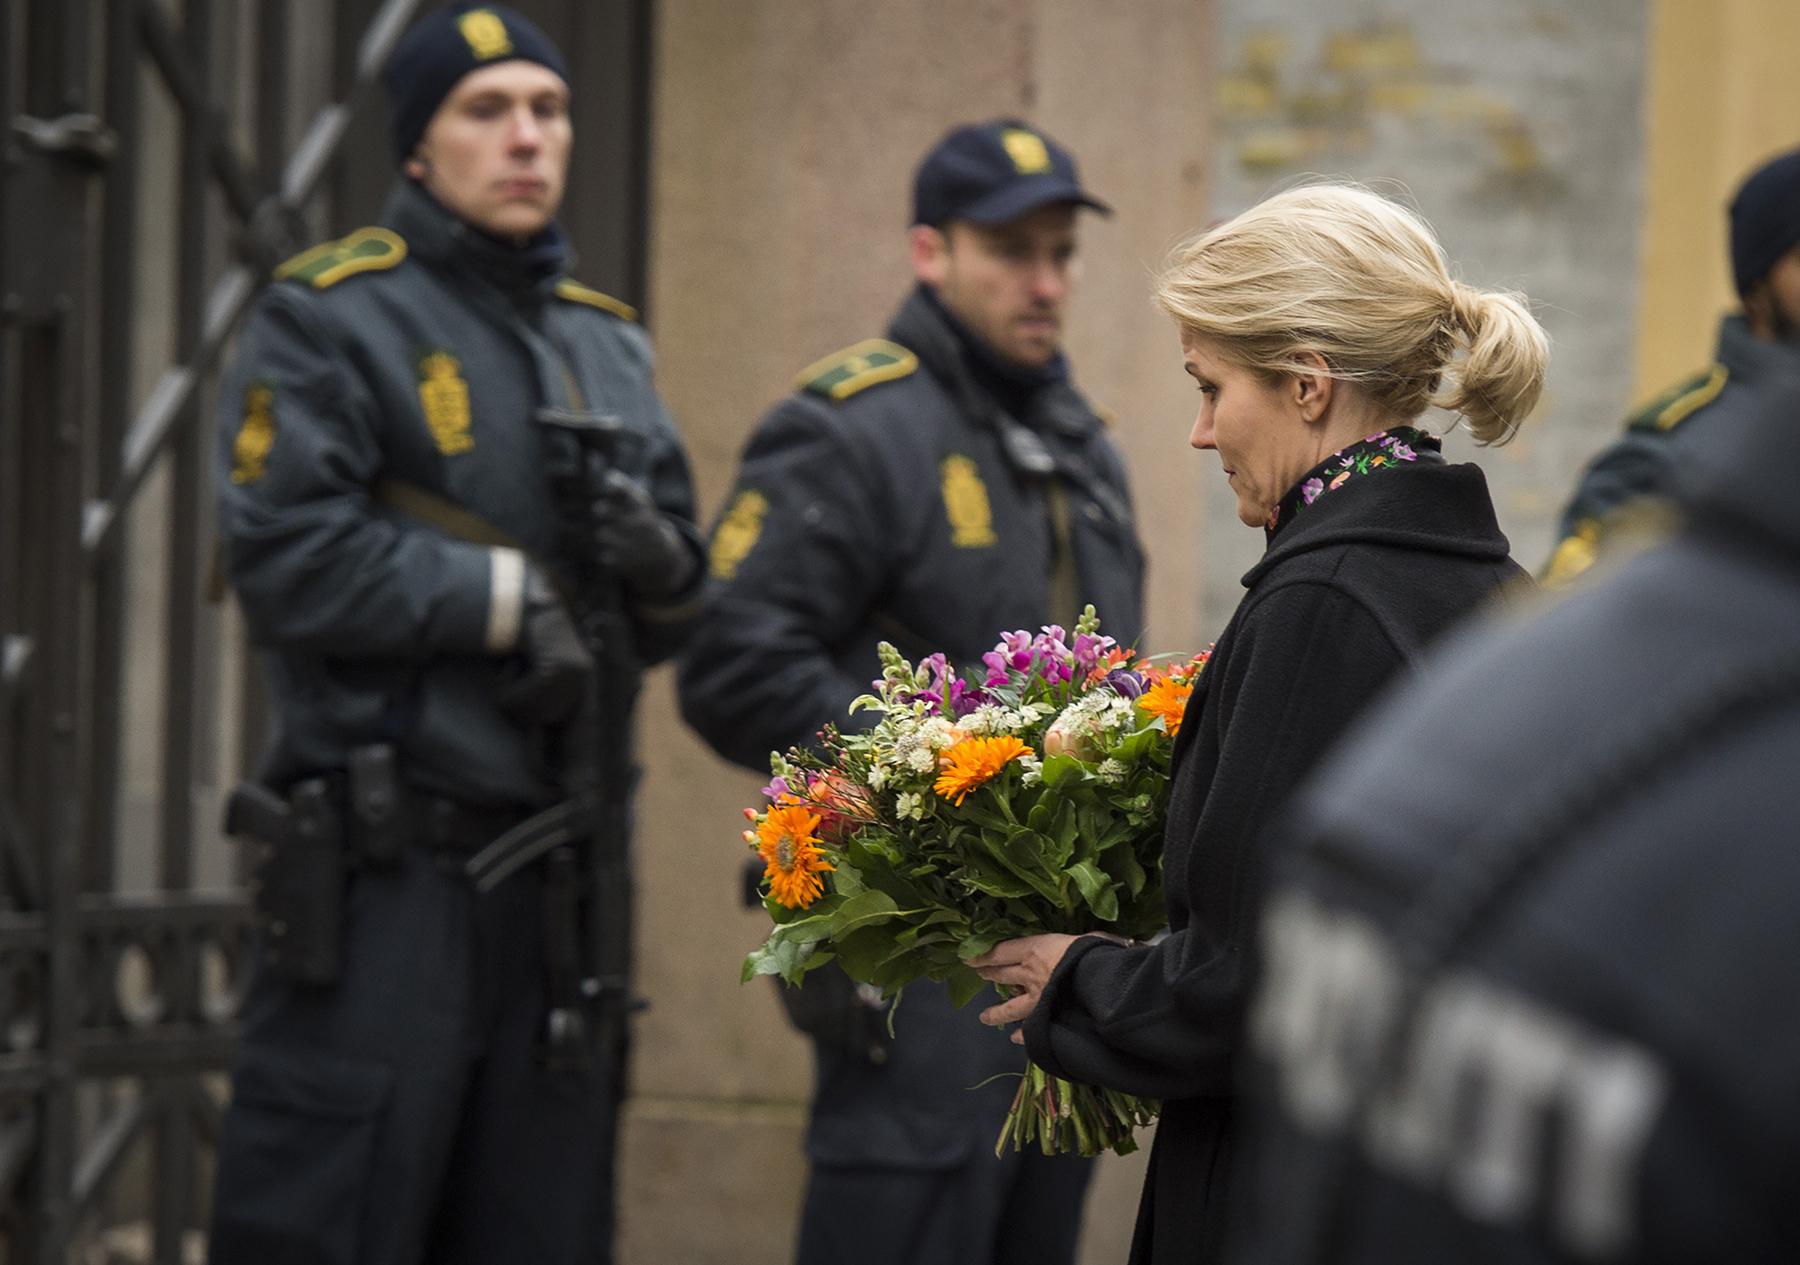 Danmarks statsminister Helle Thorning-Schmidt med blommor utanför synagogan vid Krystalgade där en person sköts ihjäl.